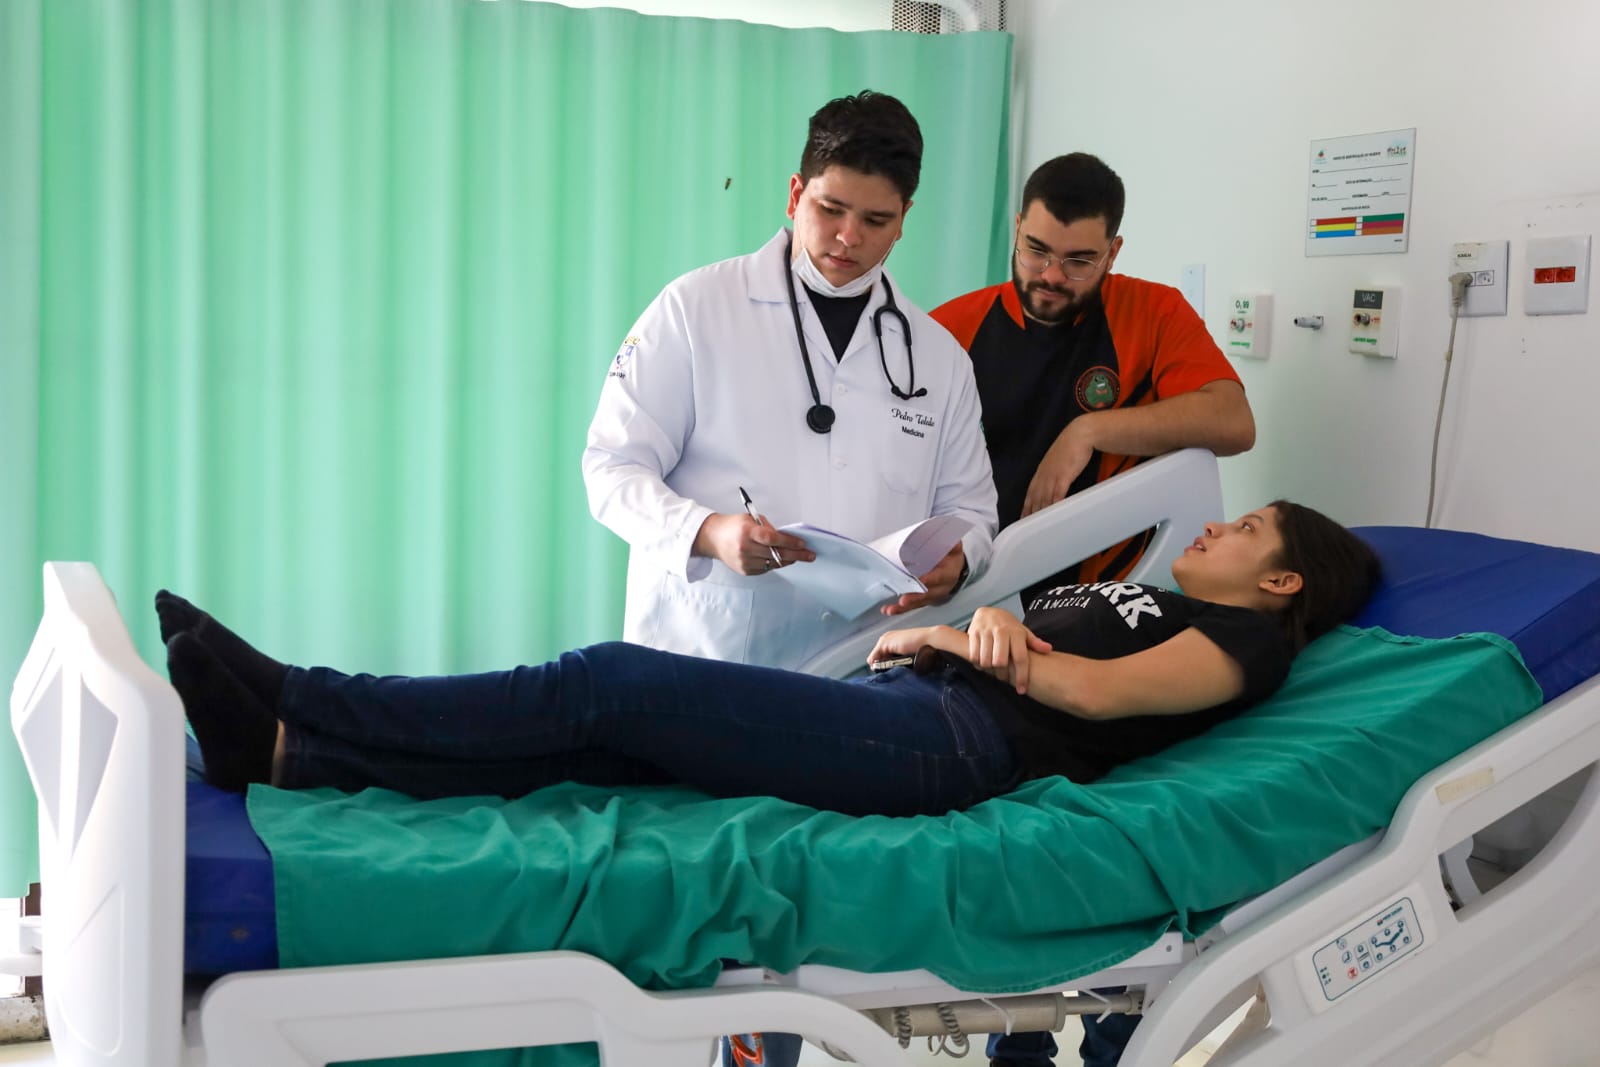 Saúde promove atualização em vigilância epidemiológica hospitalar para servidores